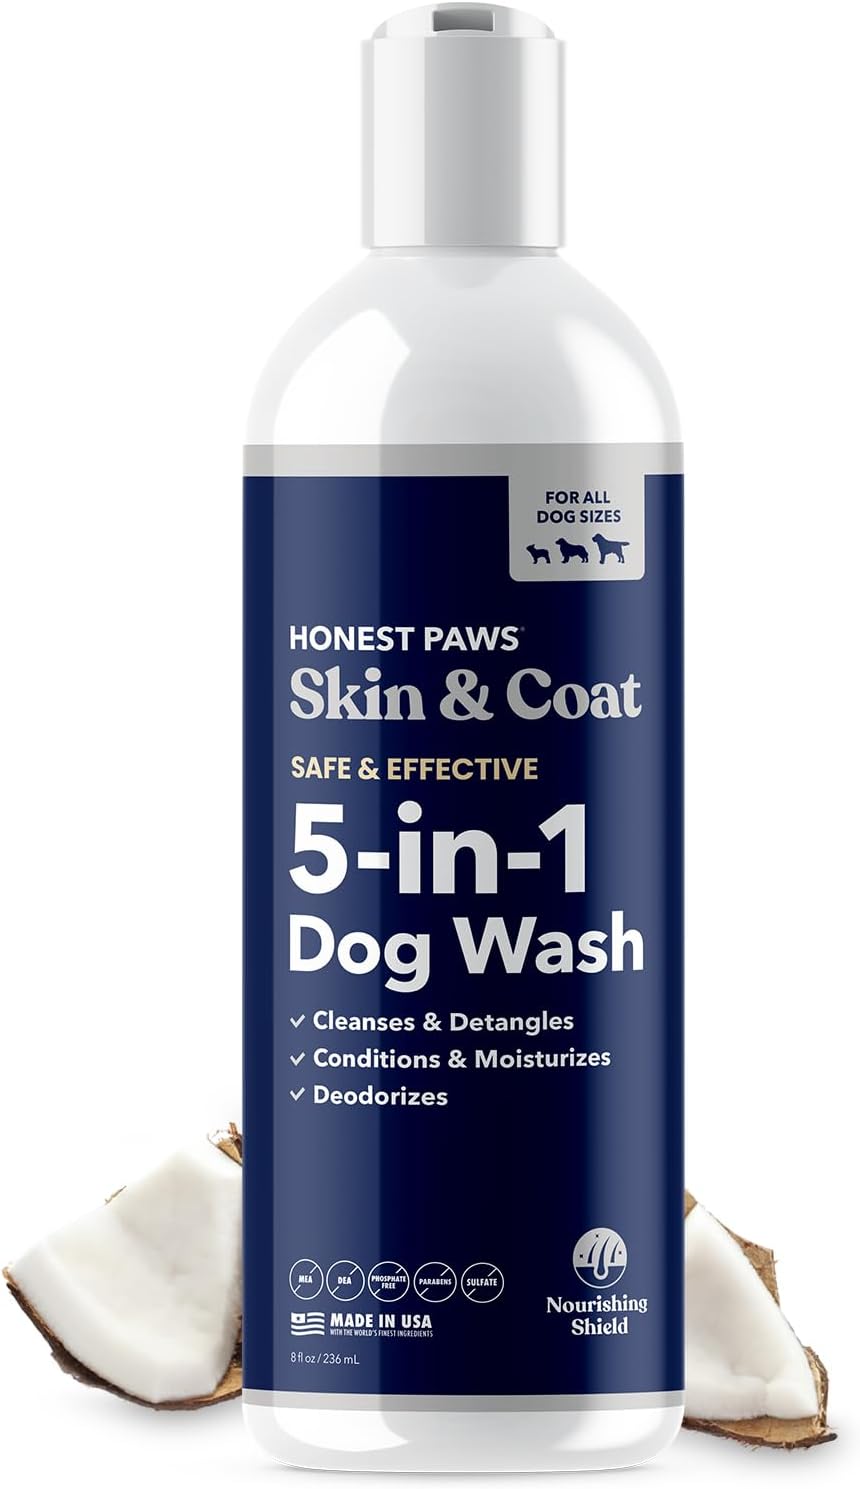 Honest Paws Dog Shampoo and Conditioner